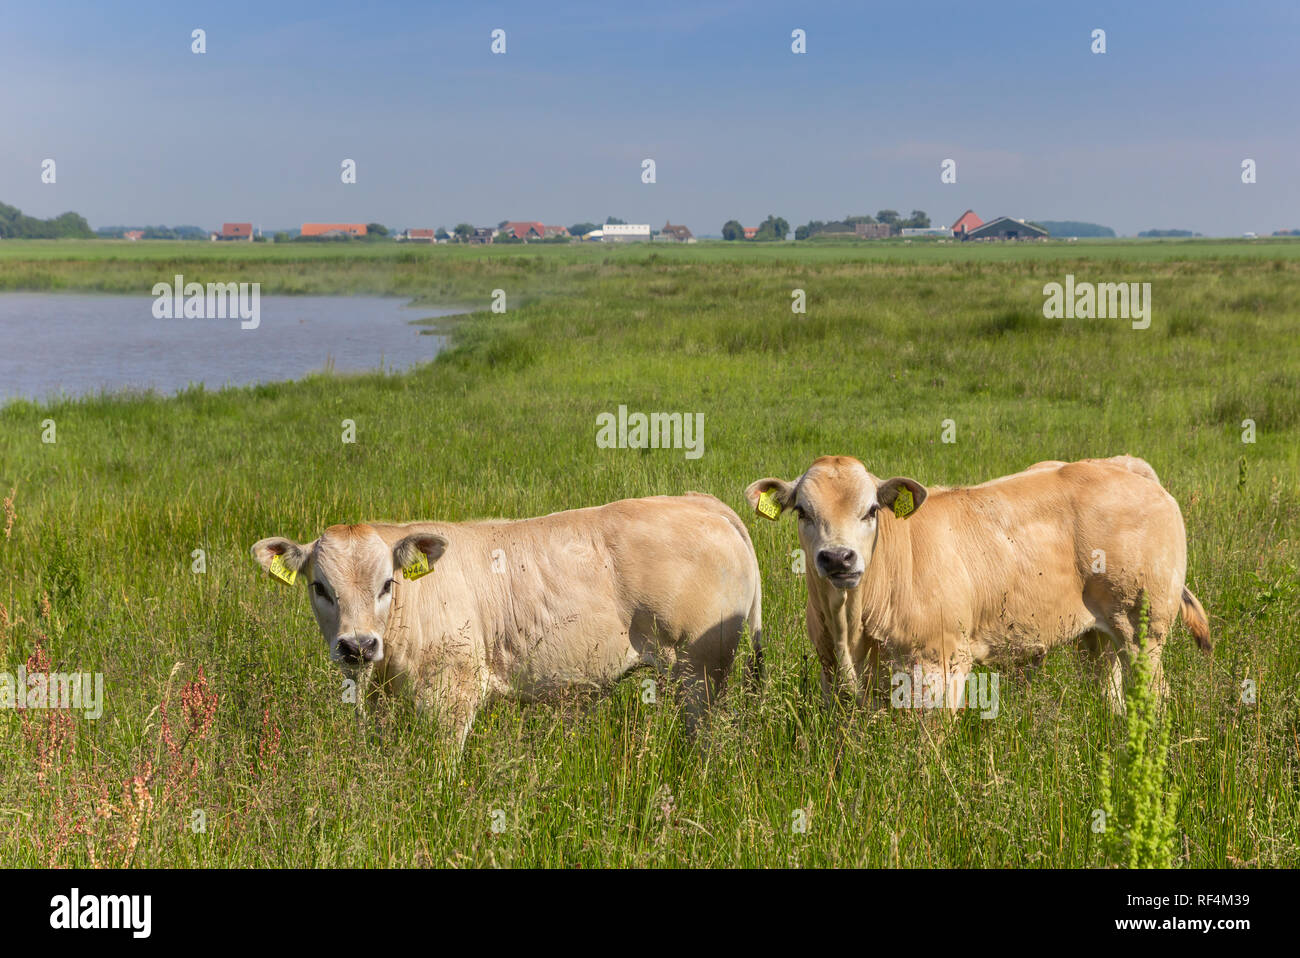 Deux Piemontese veaux dans le paysage de l'île de Texel, Pays-Bas Banque D'Images